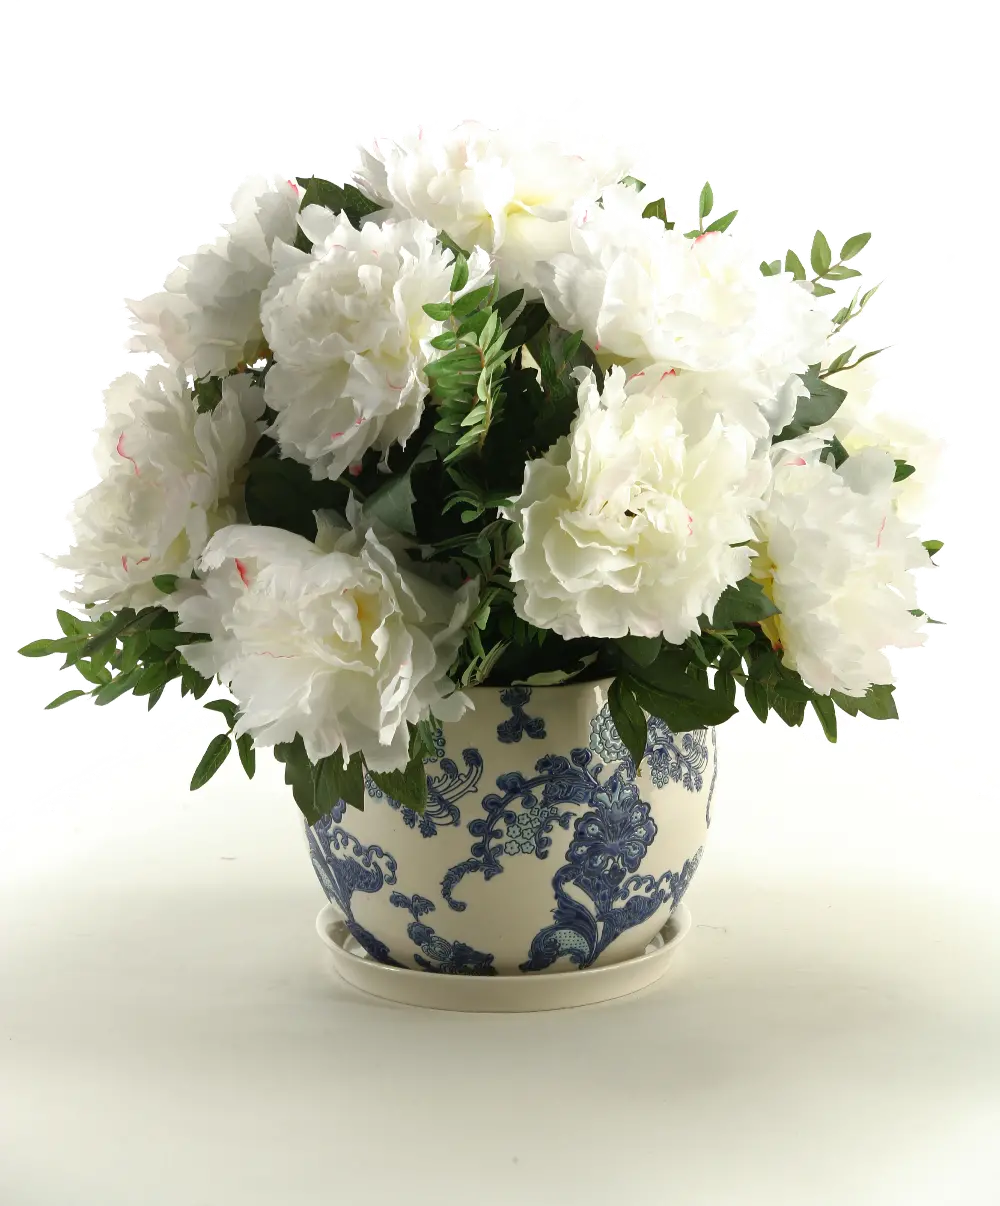 Cream Peonies Arrangement In a Ceramic Blue and White Planter-1